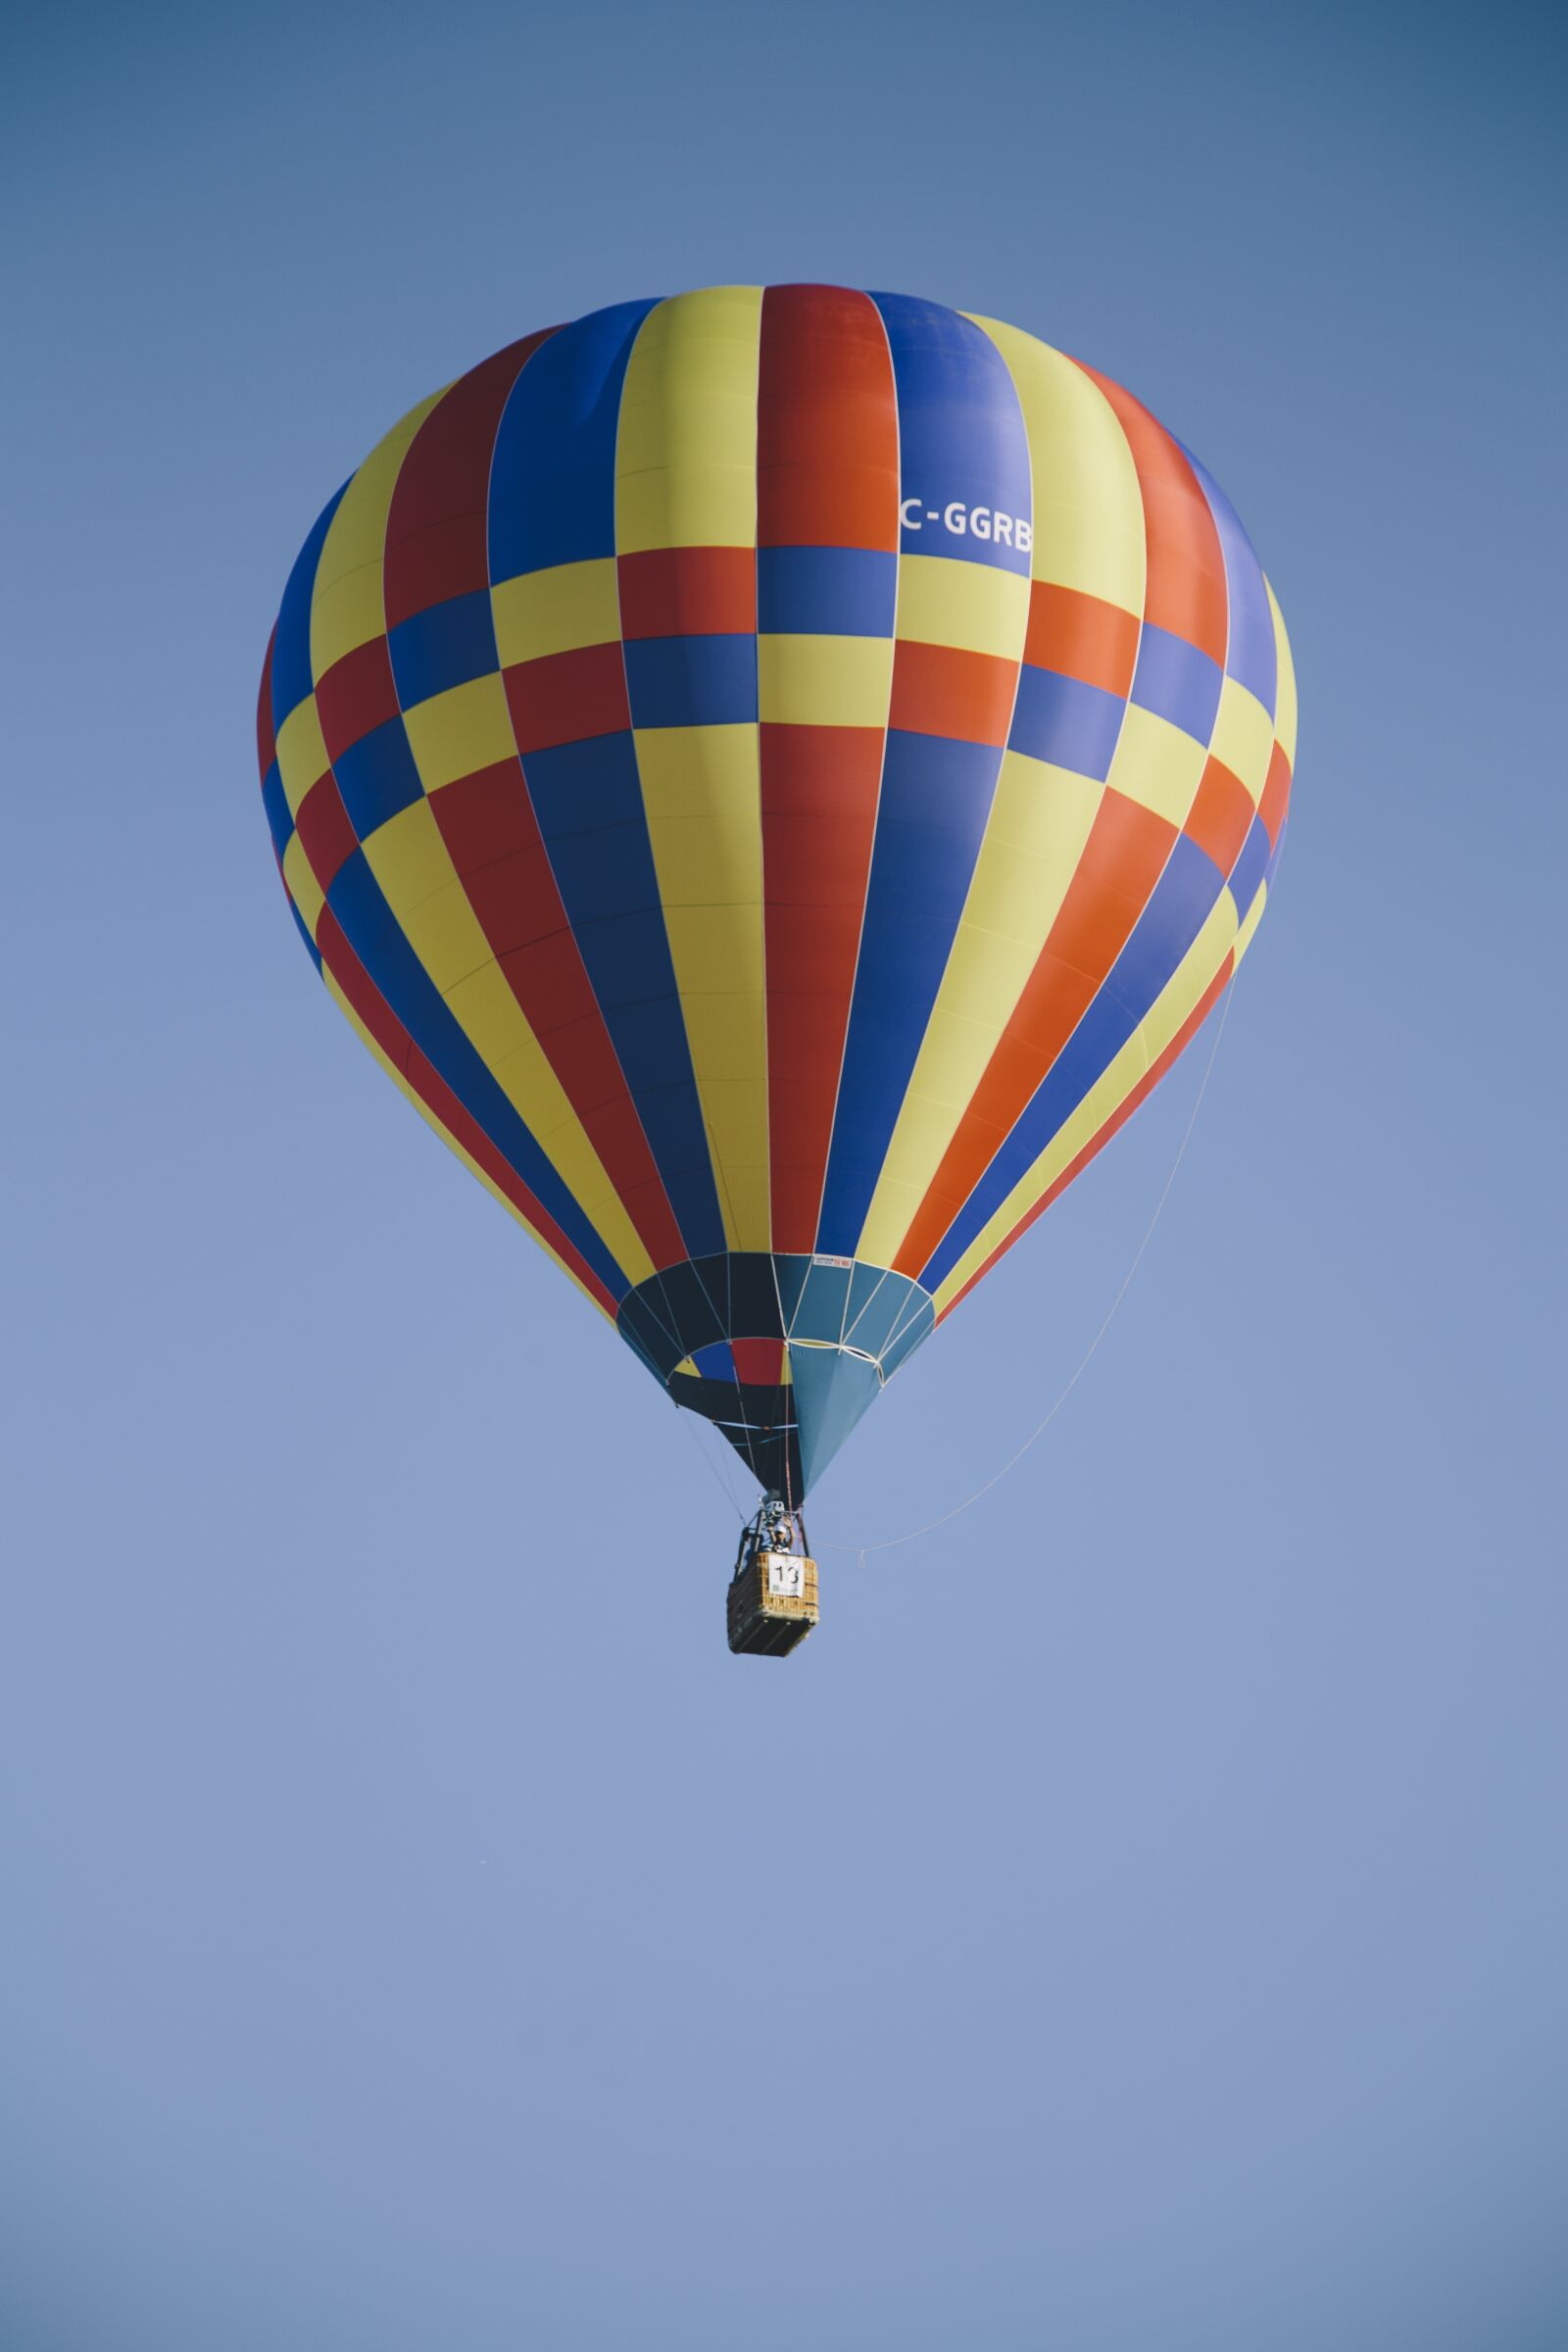 Canon EOS 6D sample photo. Hot air balloon, balloon photography